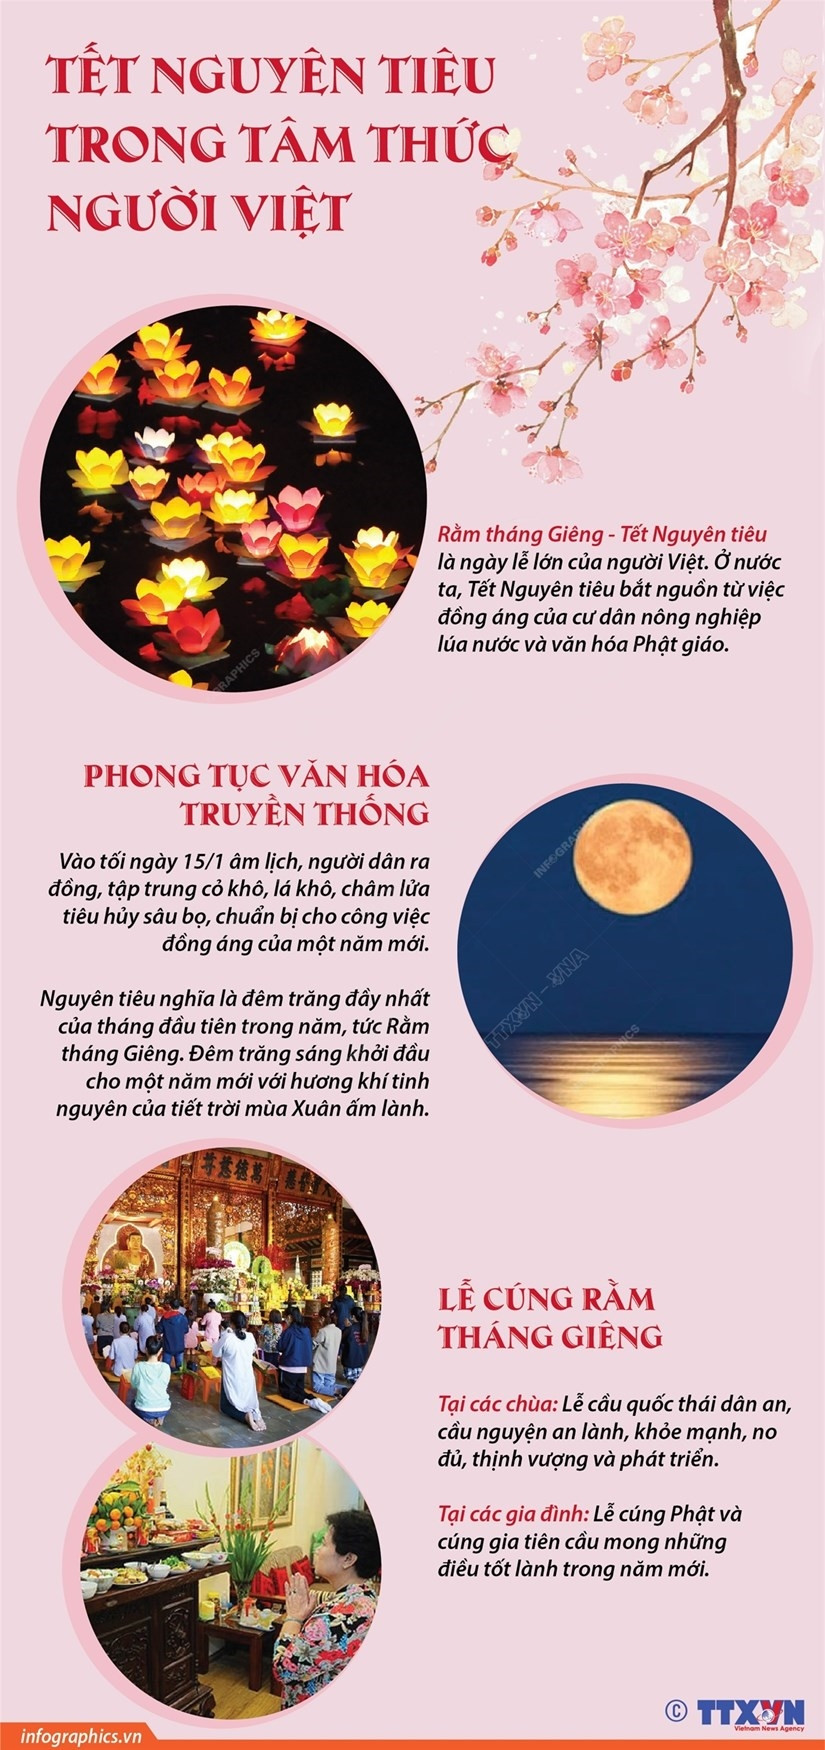 [Infographics] Tet Nguyen tieu trong tam thuc cua nguoi Viet Nam hinh anh 1